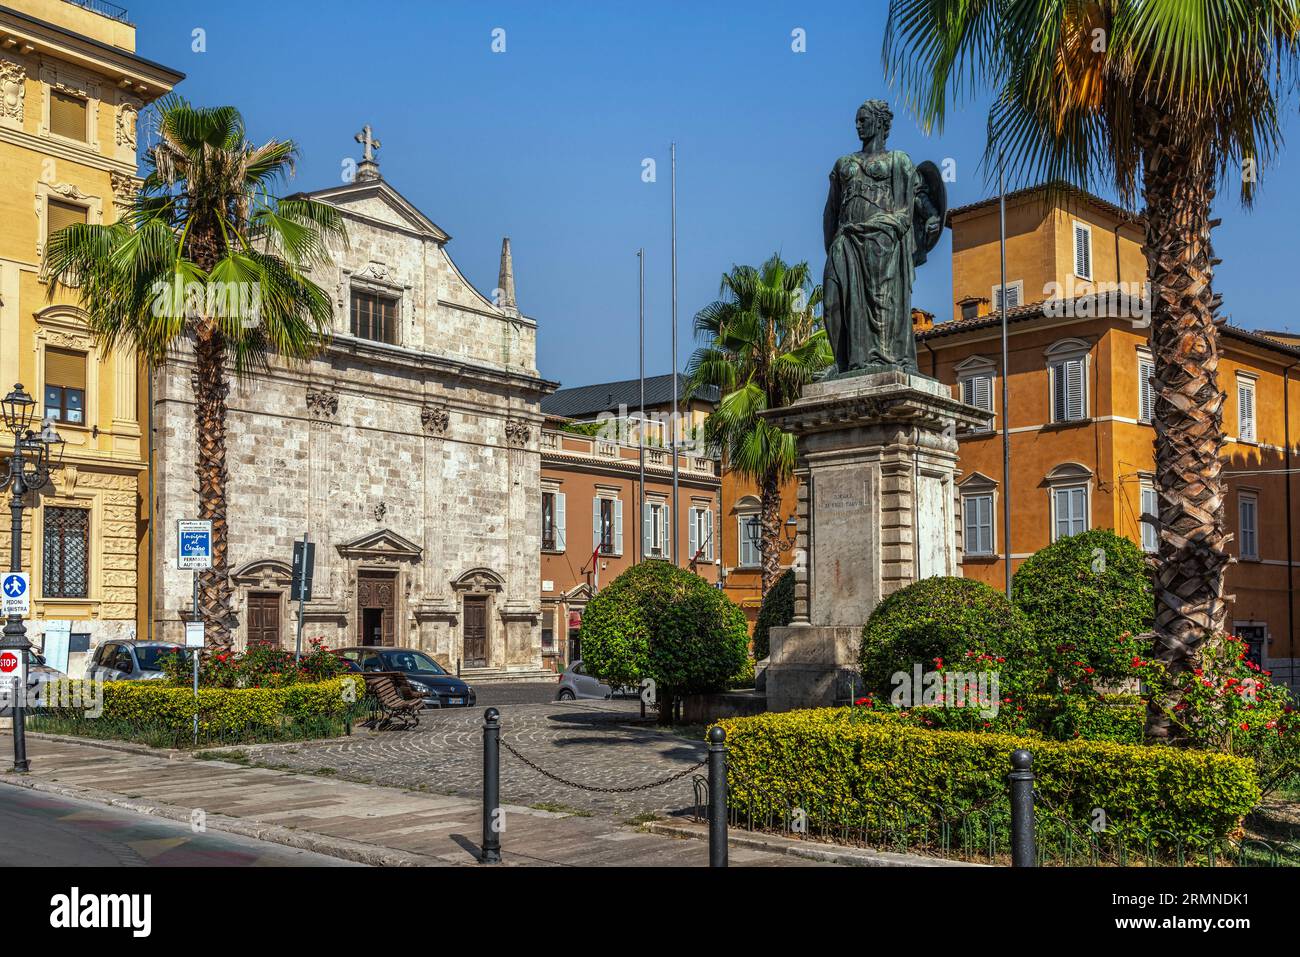 Nel centro storico di Ascoli, piazza Roma con la chiesa di Santa Maria della Carità e la statua commemorativa dei caduti della grande guerra Foto Stock